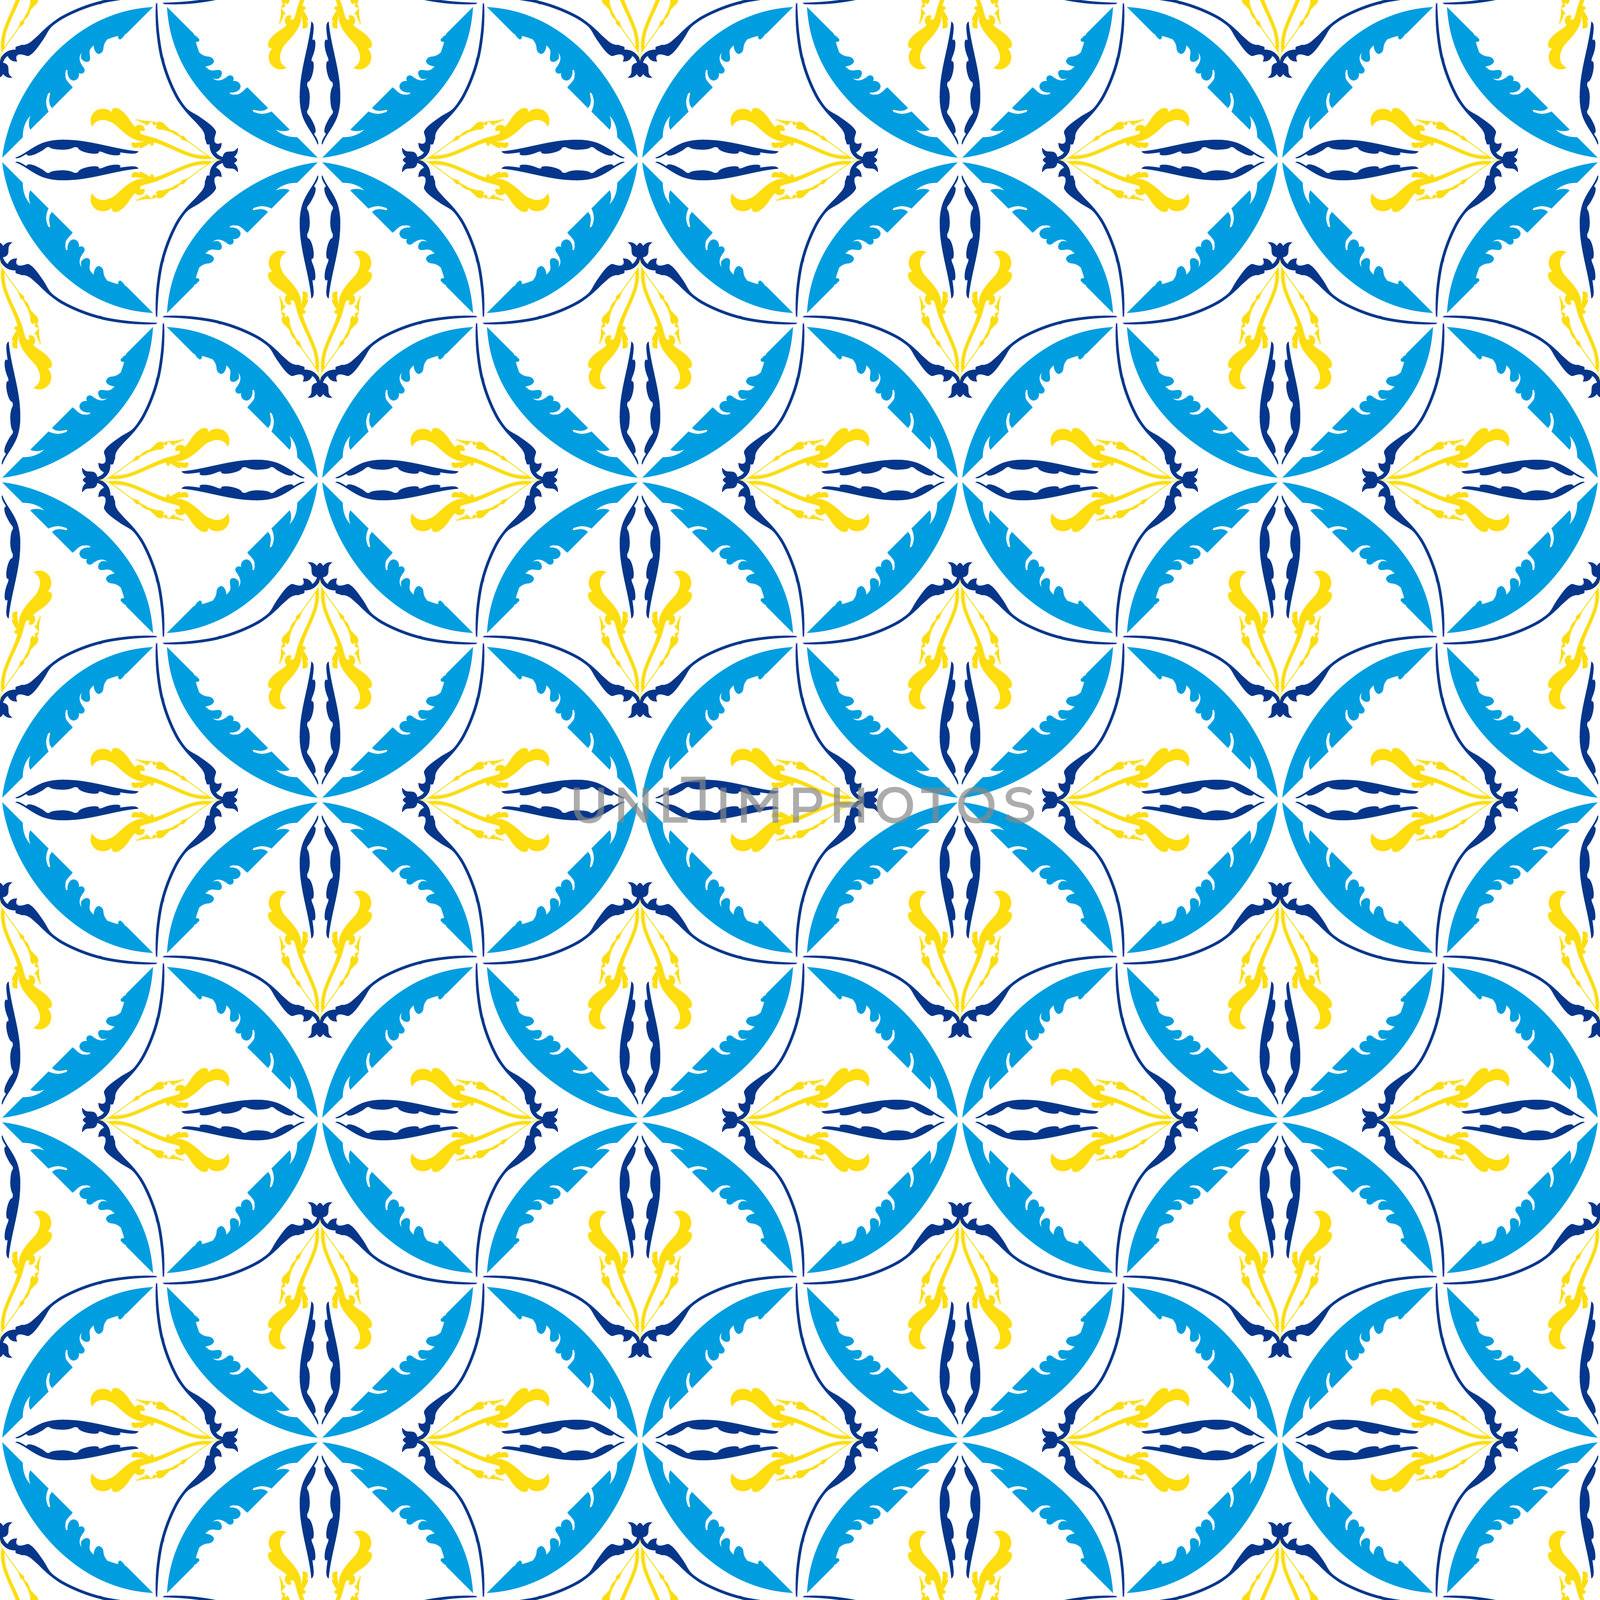 Yellow, blue and white mosaic seamless pattern.